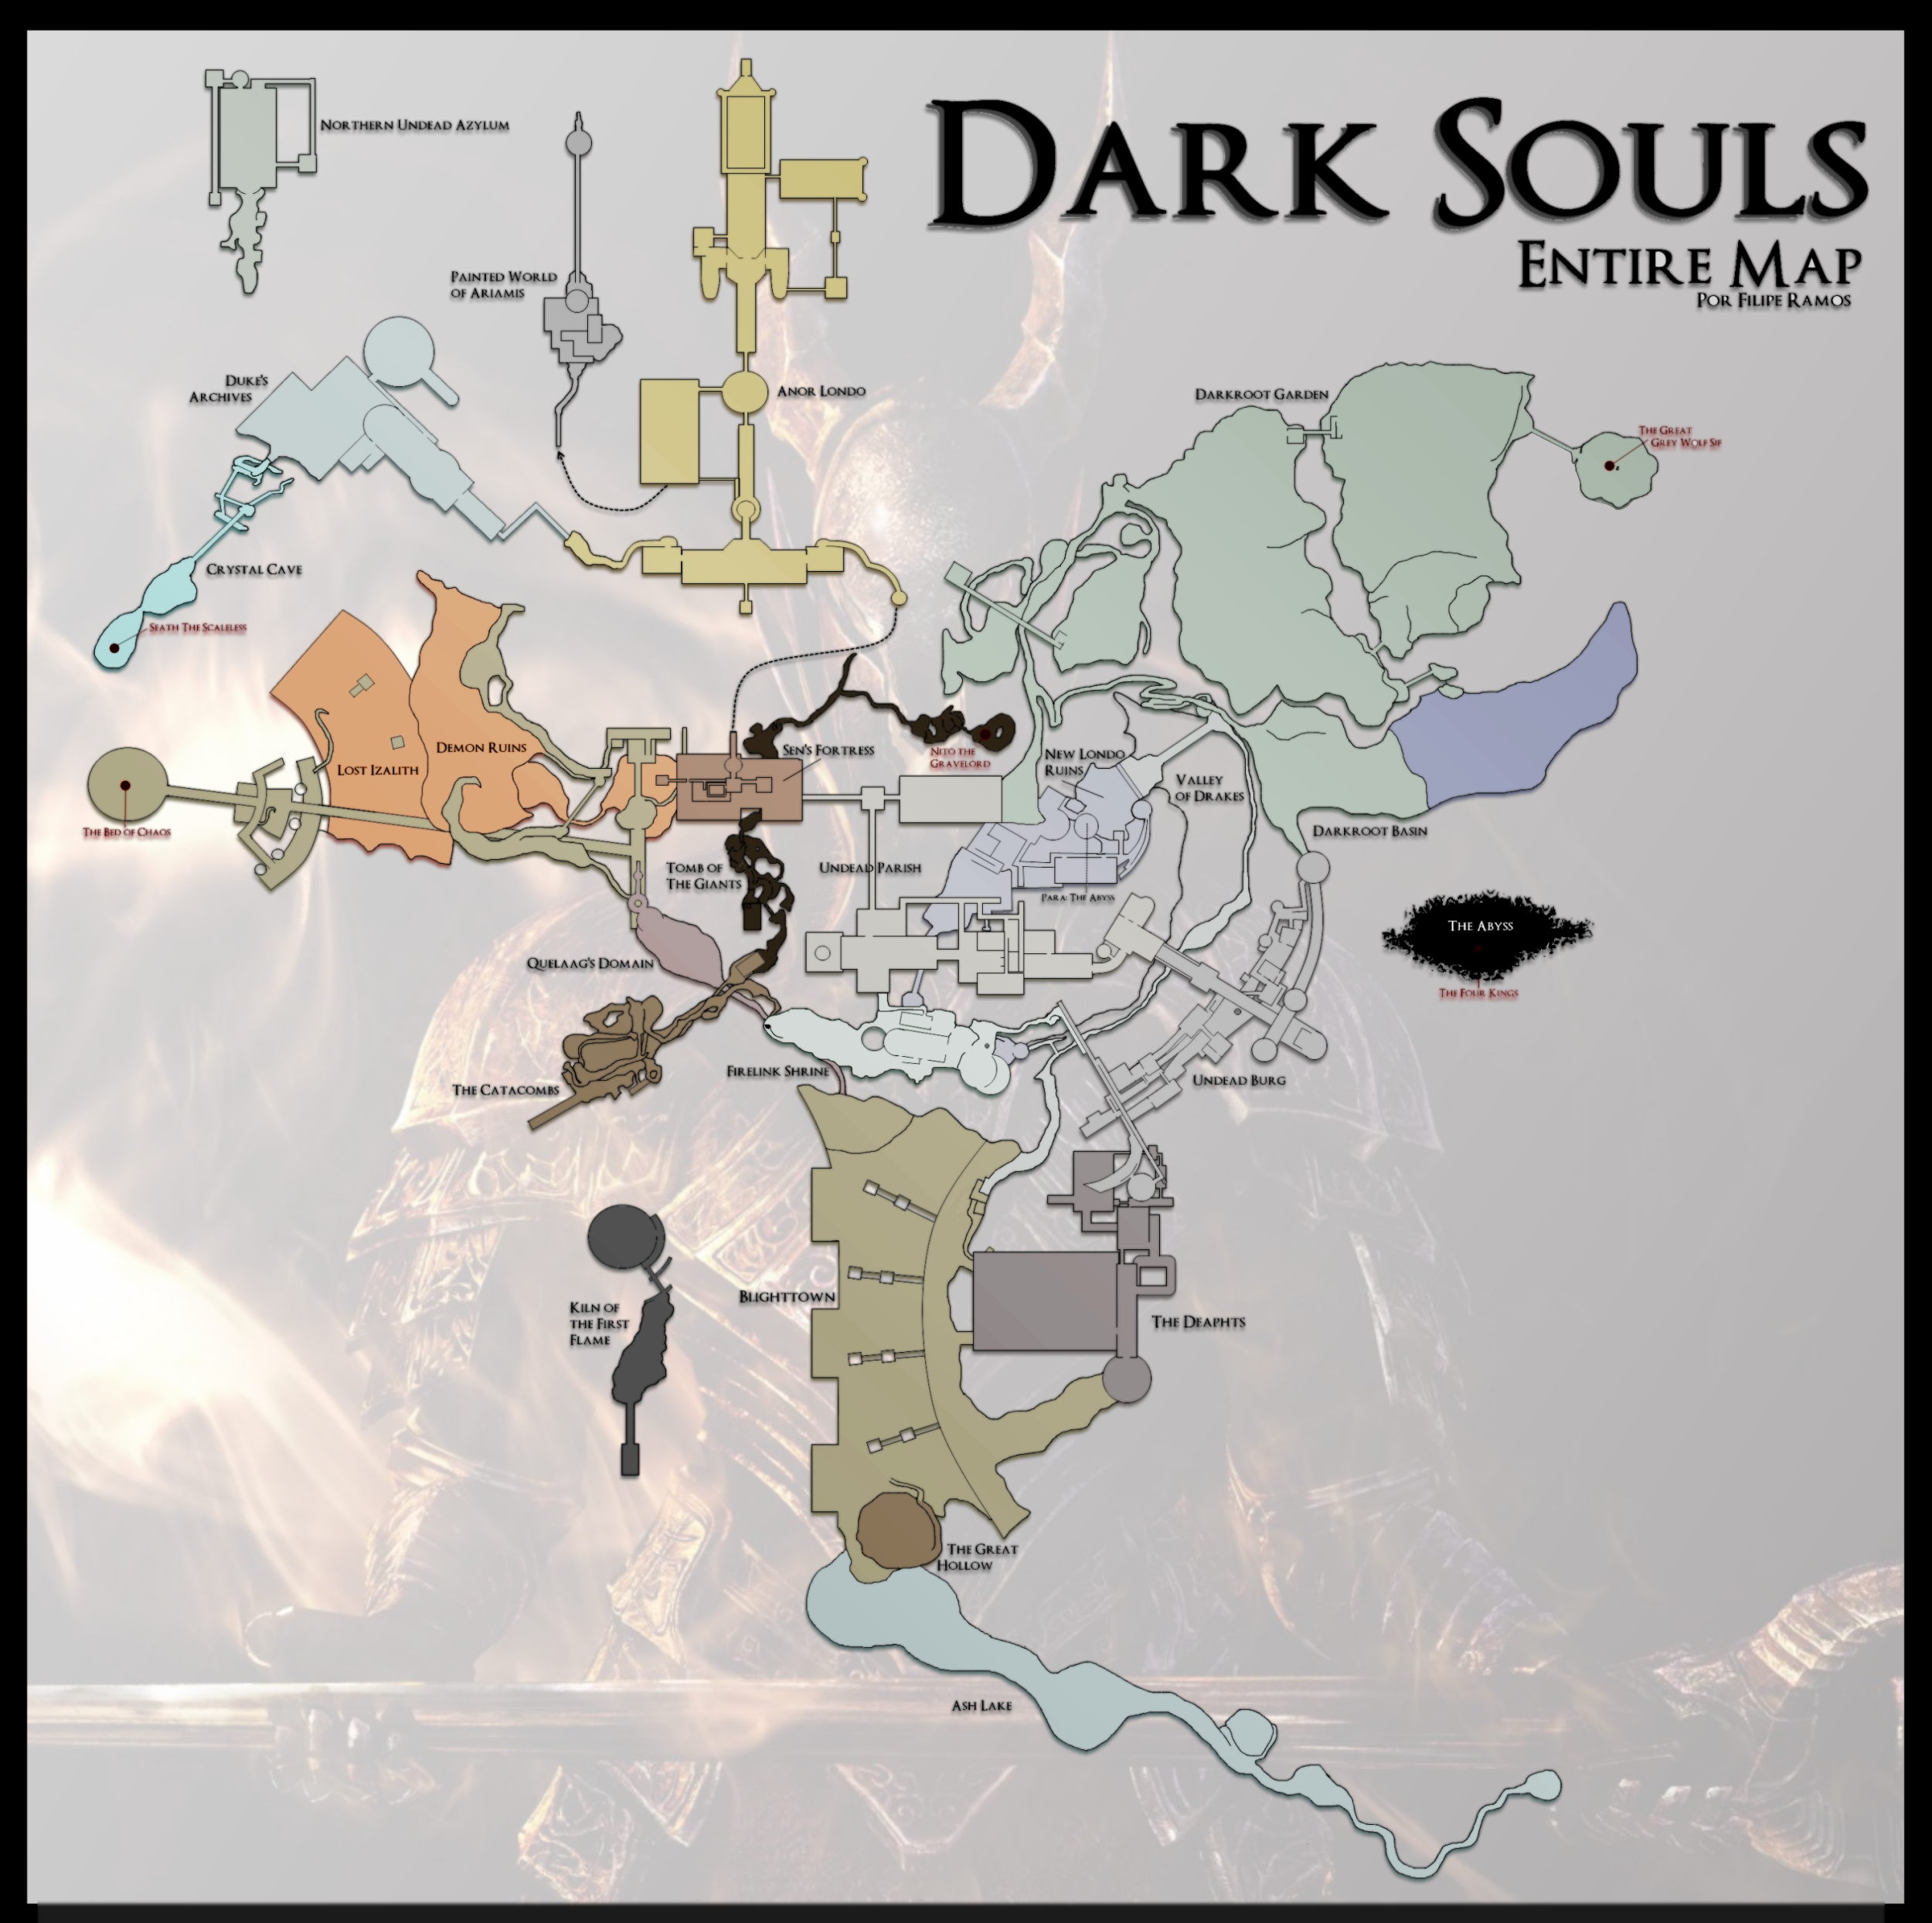 dark souls 2 map npc